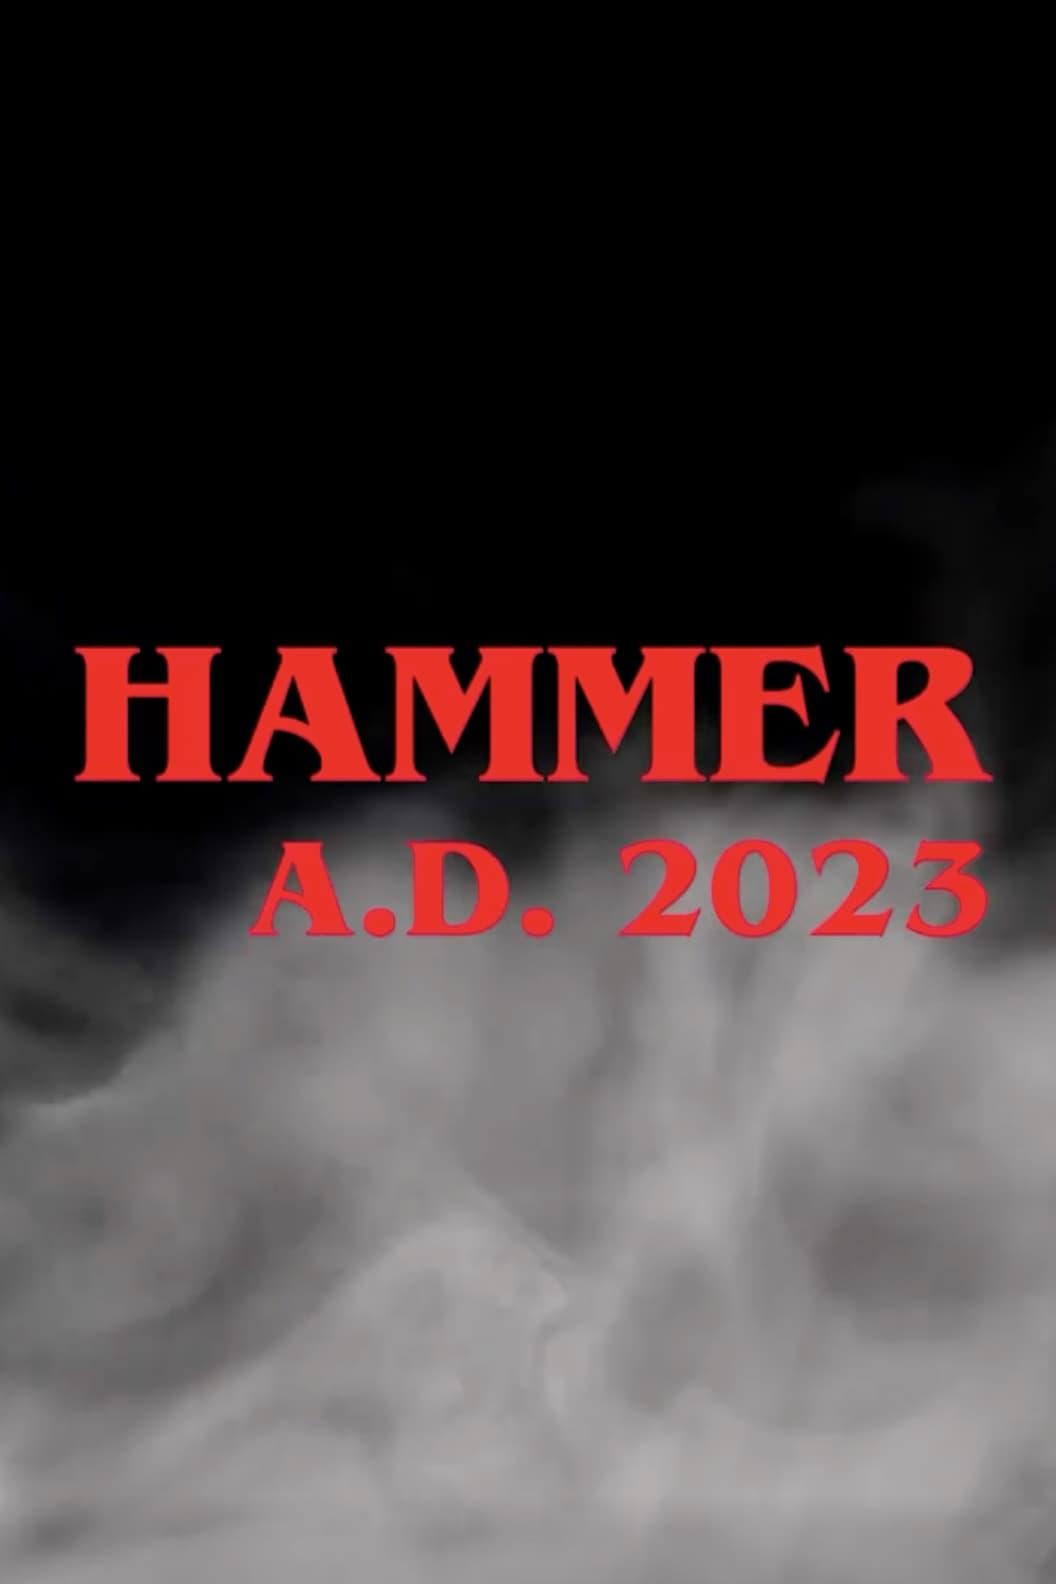 Hammer A.D. 2023 poster